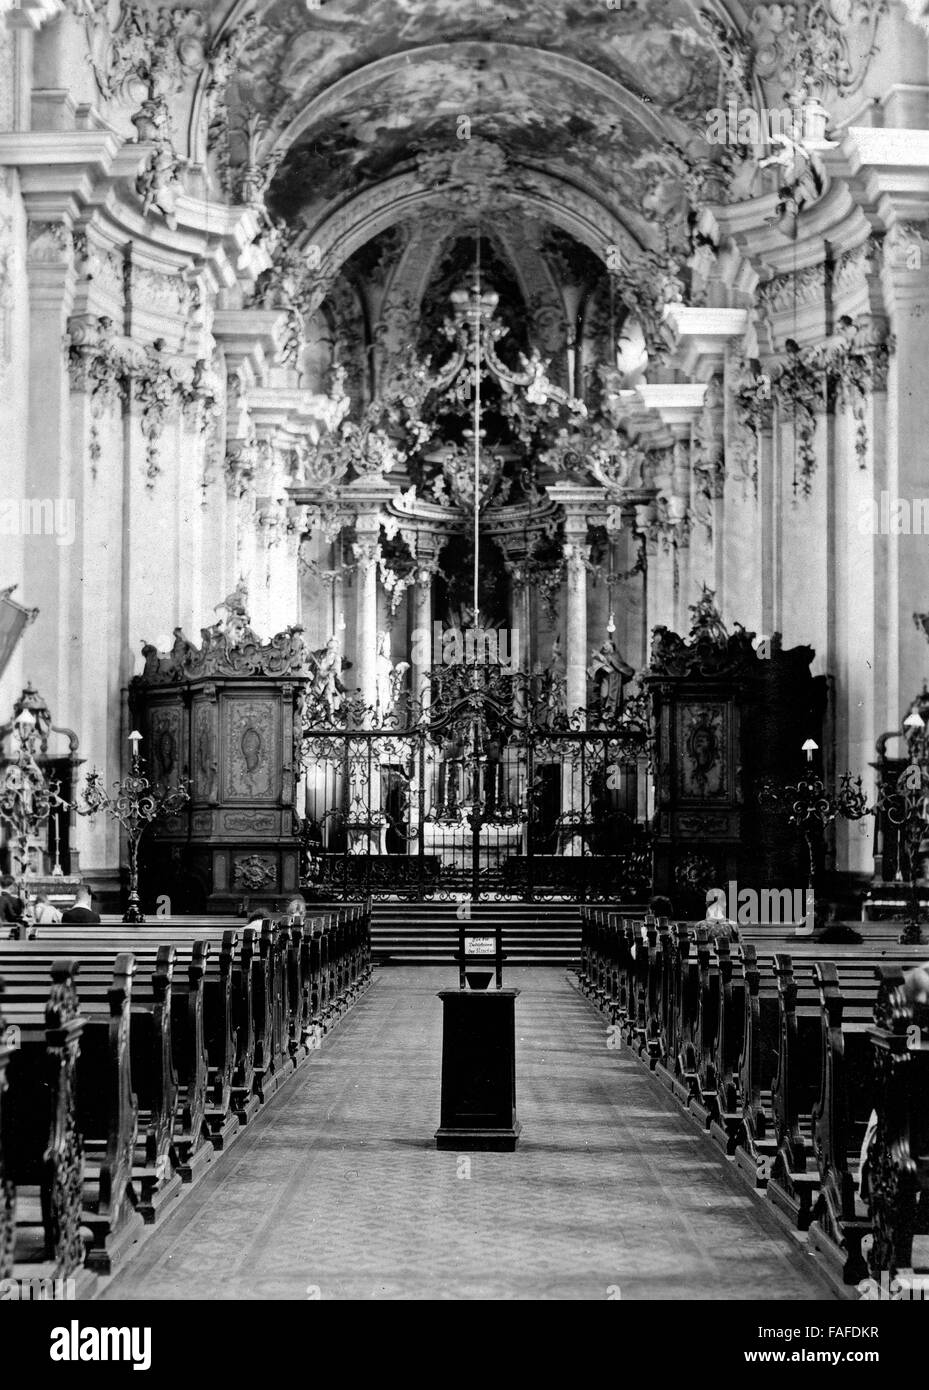 Im Inneren der Barockkirche Saint Paulin de Trèves, Deutschland 1930 er Jahre. L'intérieur d'église baroque Saint Paulin à Trier, Allemagne 1930. Banque D'Images